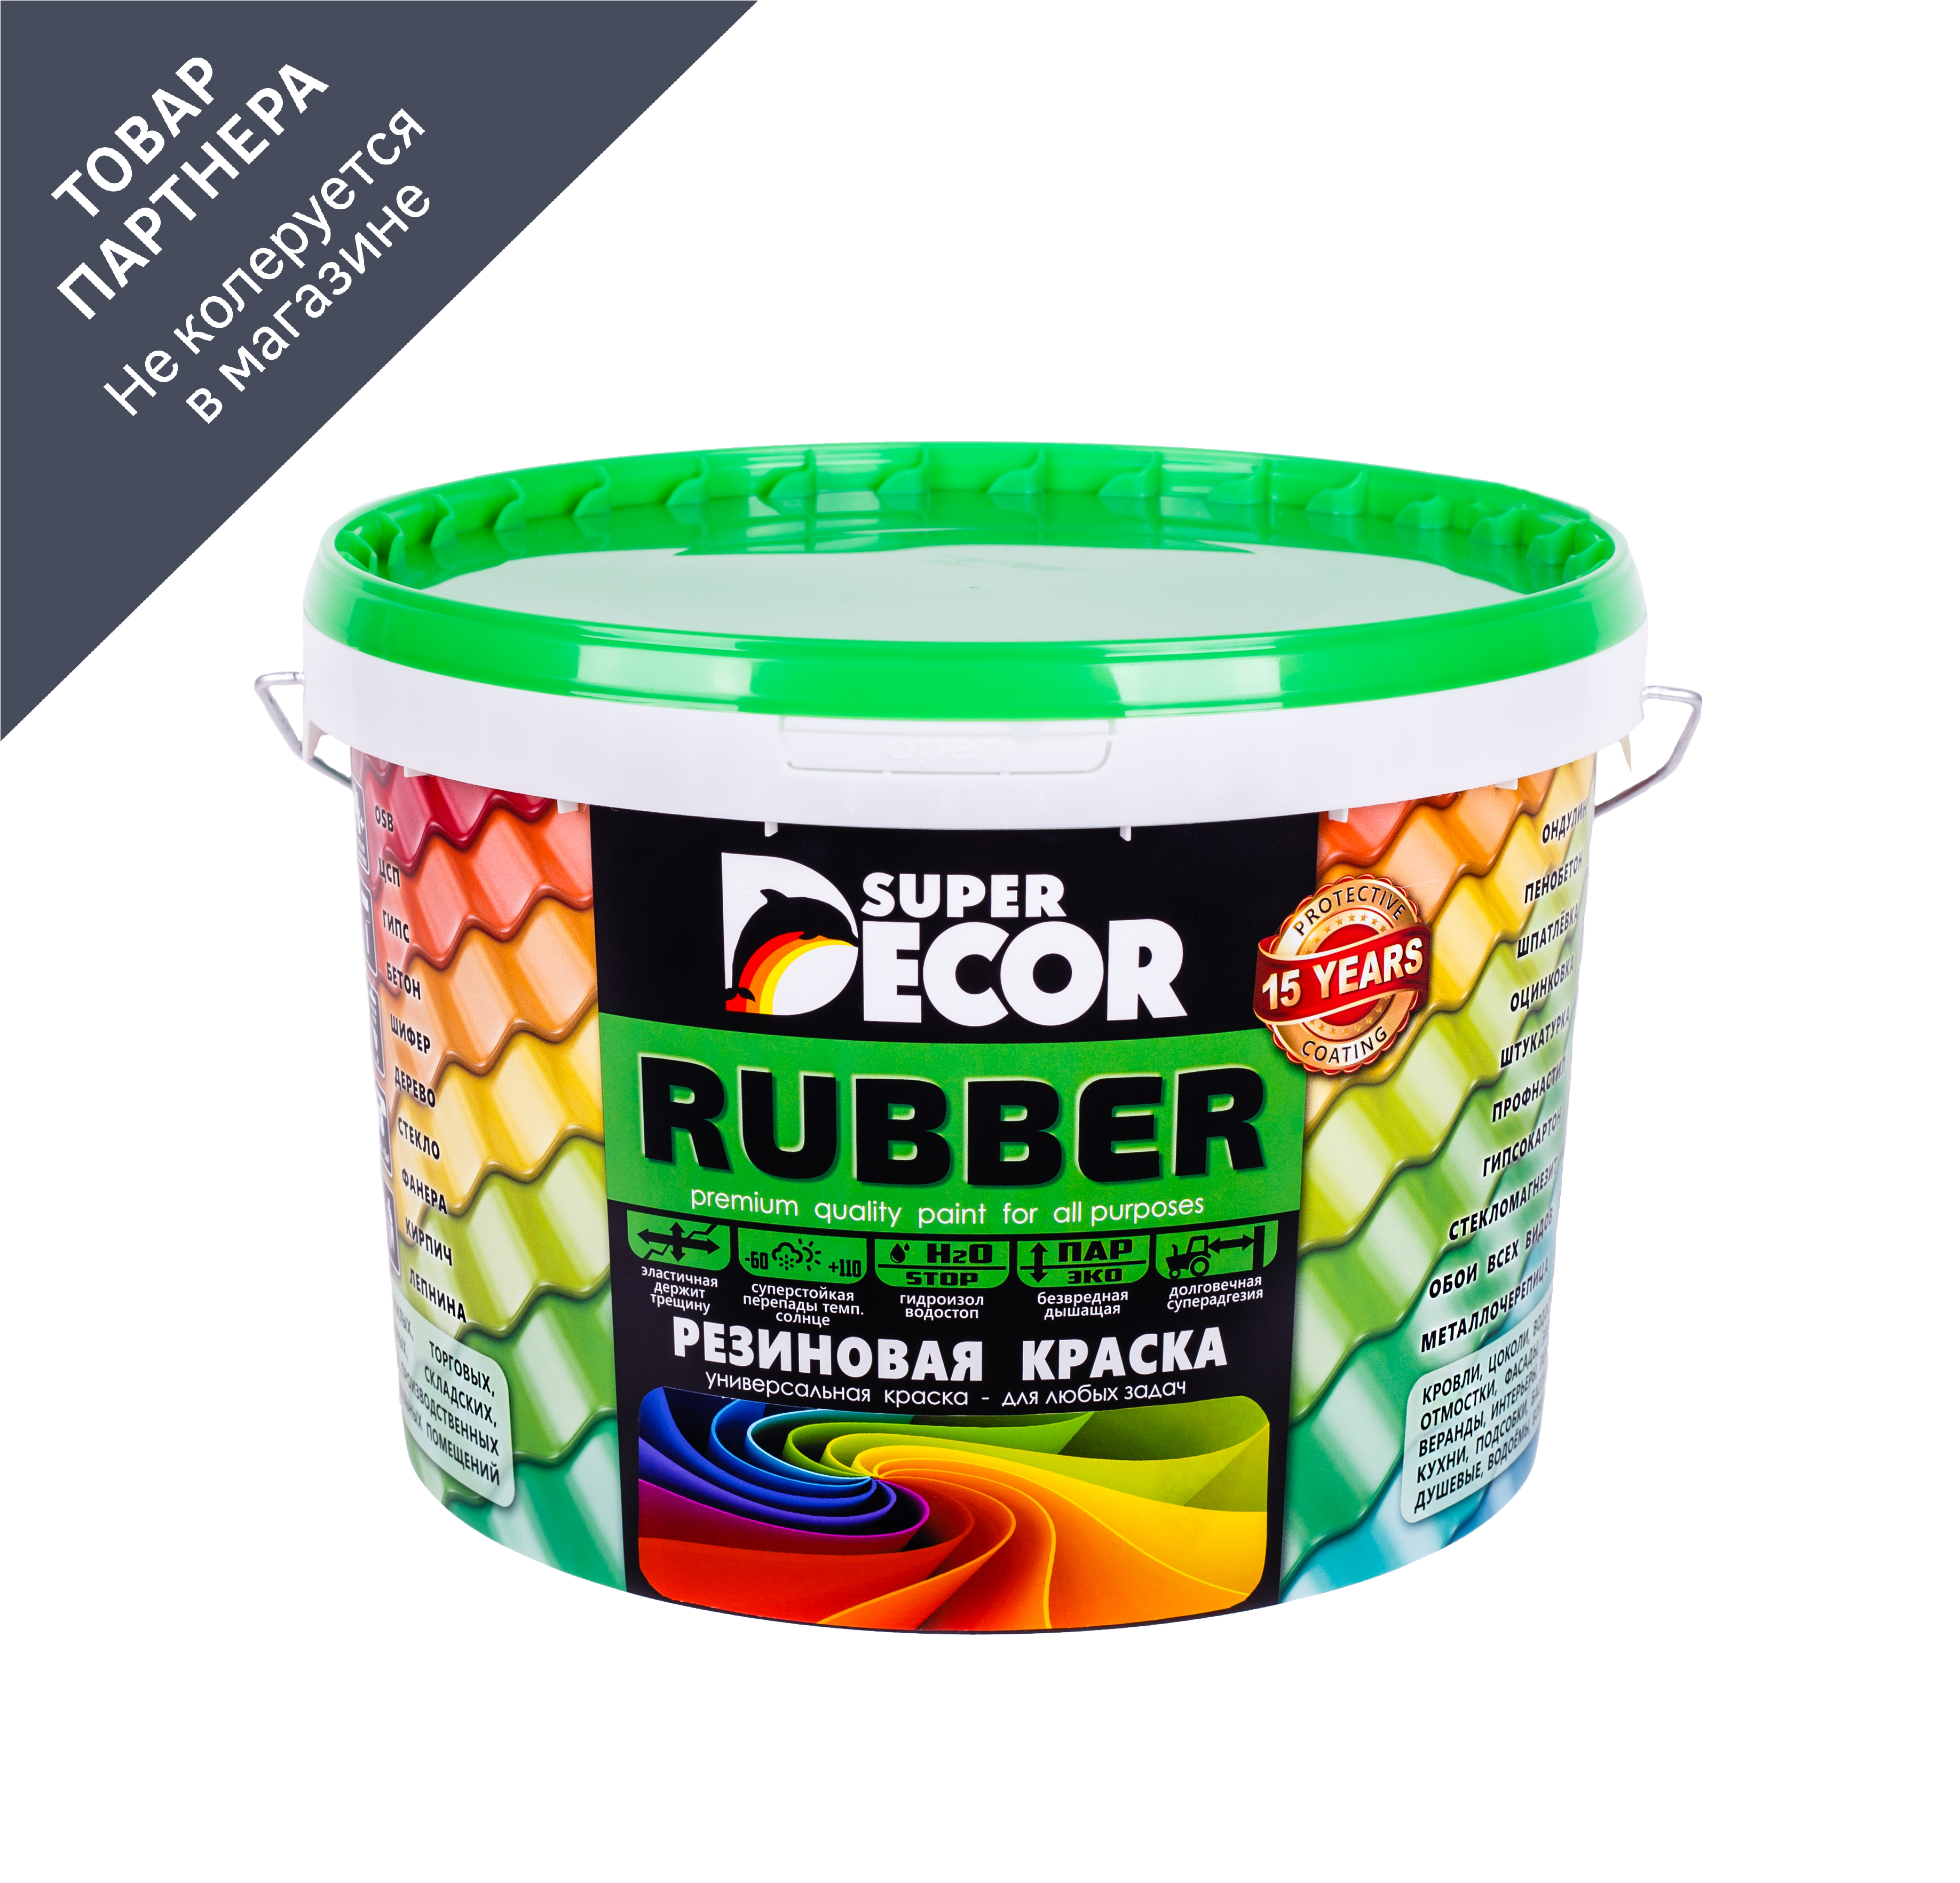 90174500 Краска резиновая Rubber цвет № 14 Изумруд 3 кг STLM-0123562 SUPER DECOR